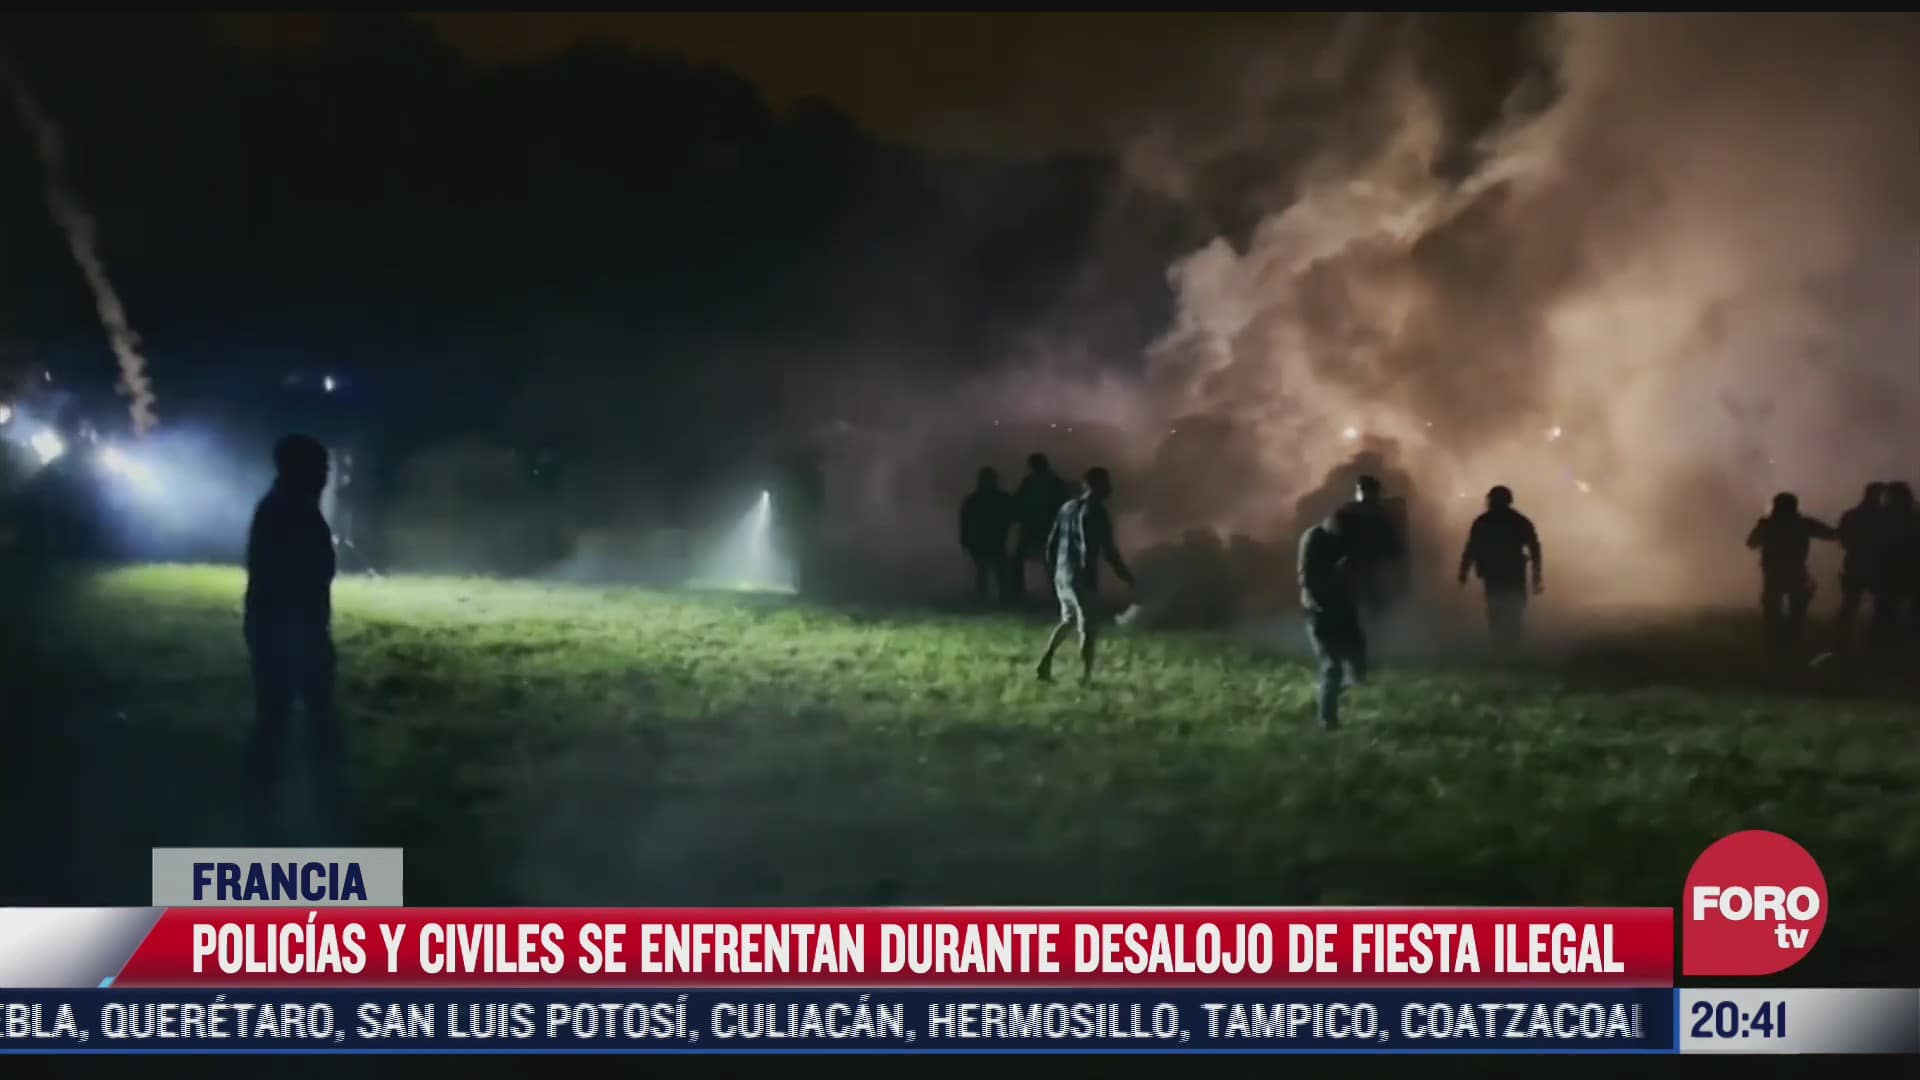 policias y civiles se enfrentan durante desalojo en francia